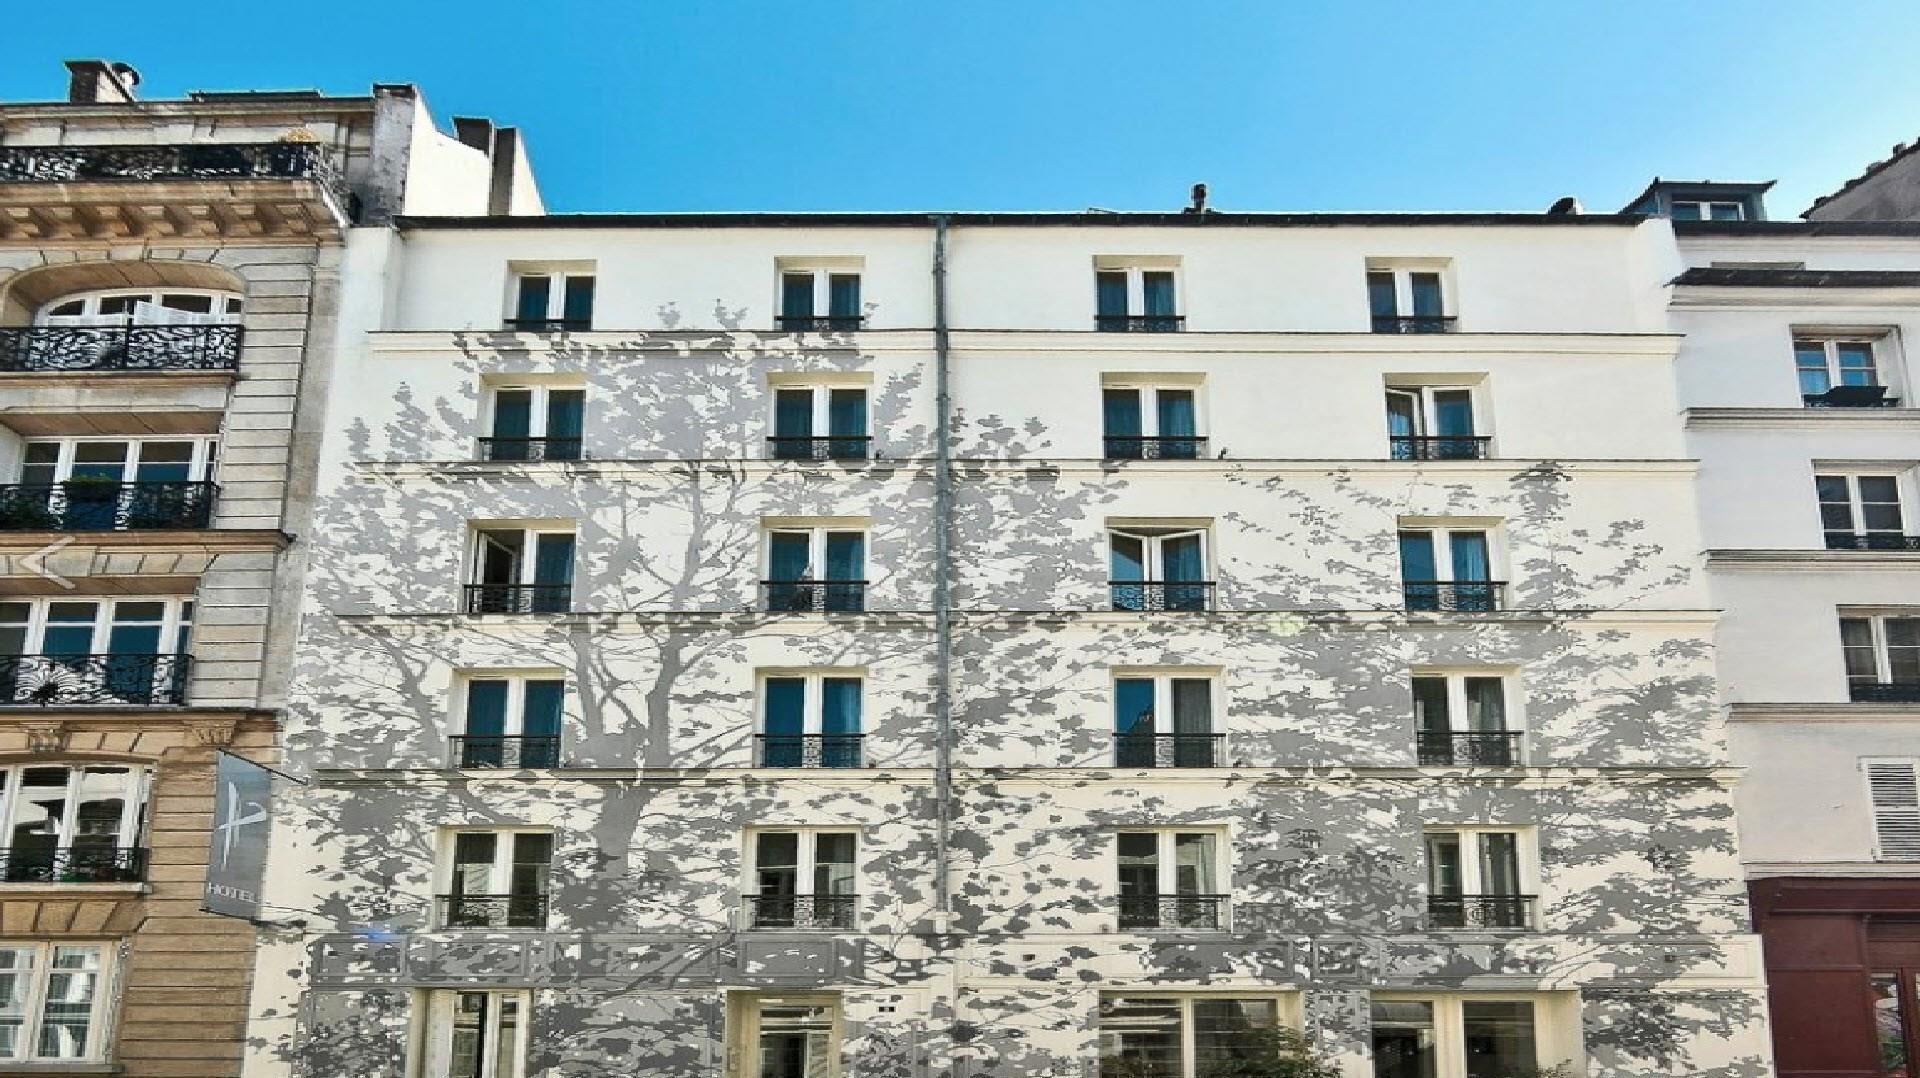 Apostrophe Hotel in Paris, FR